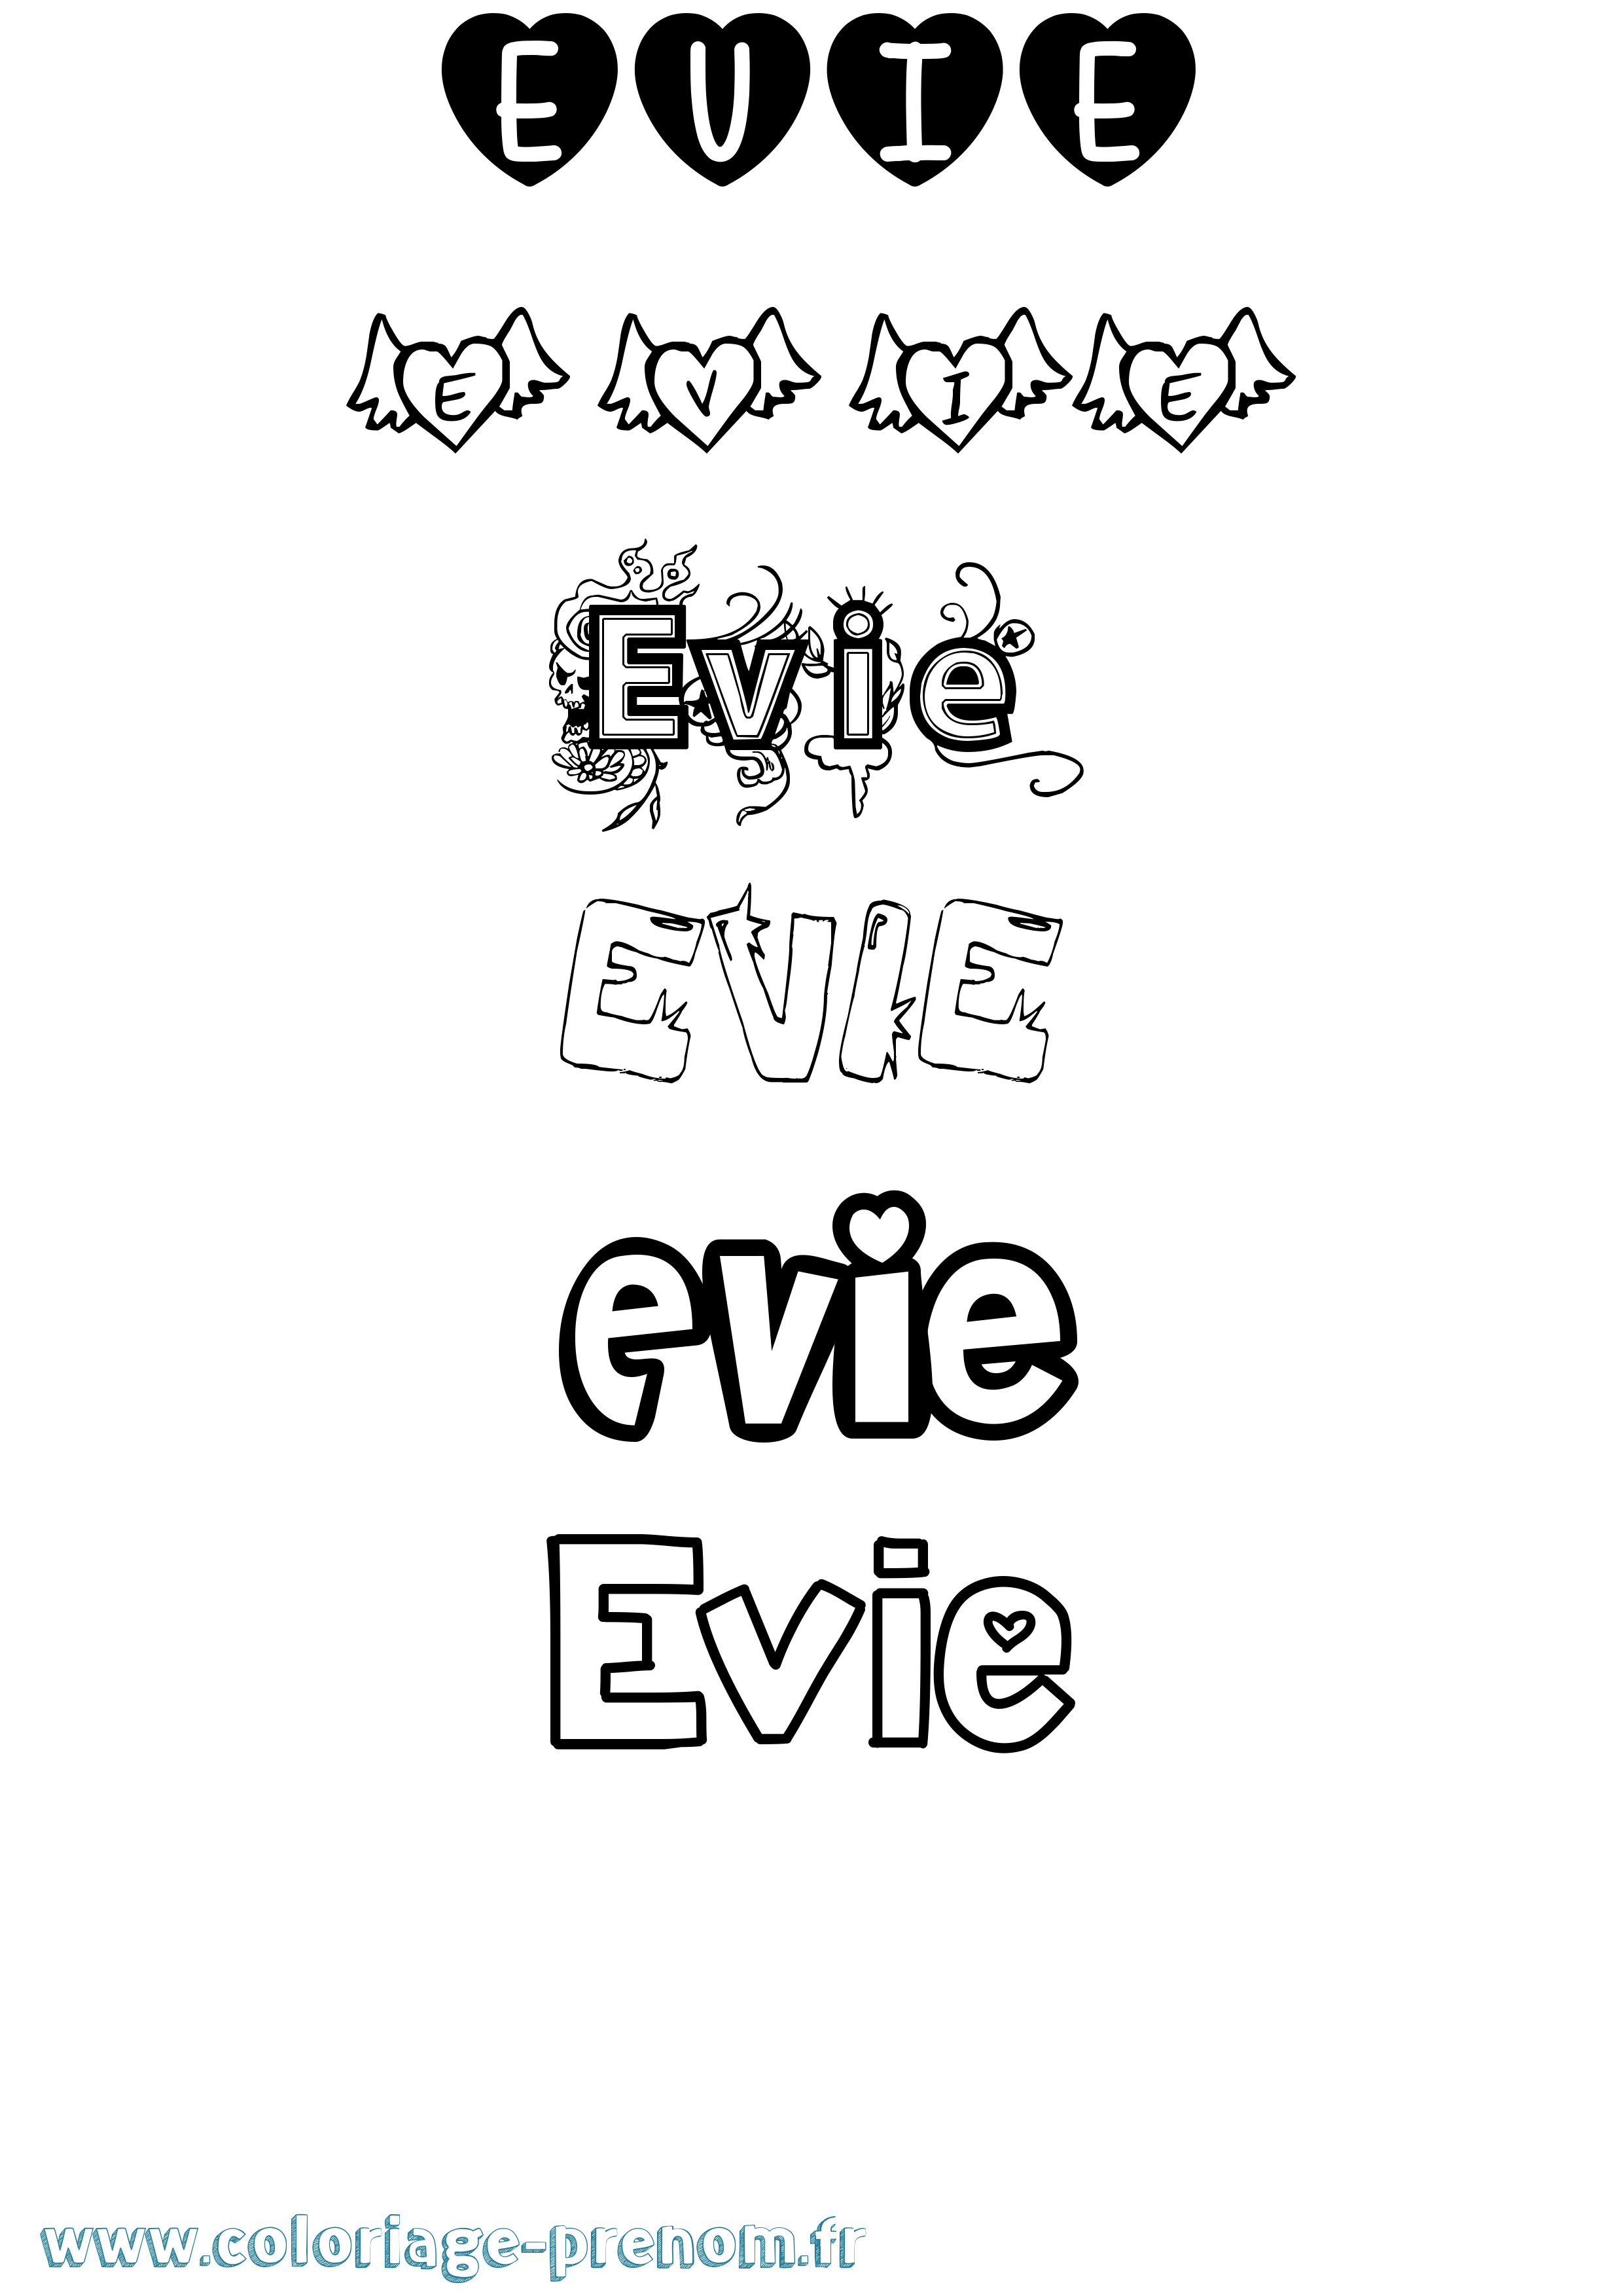 Coloriage prénom Evie Girly